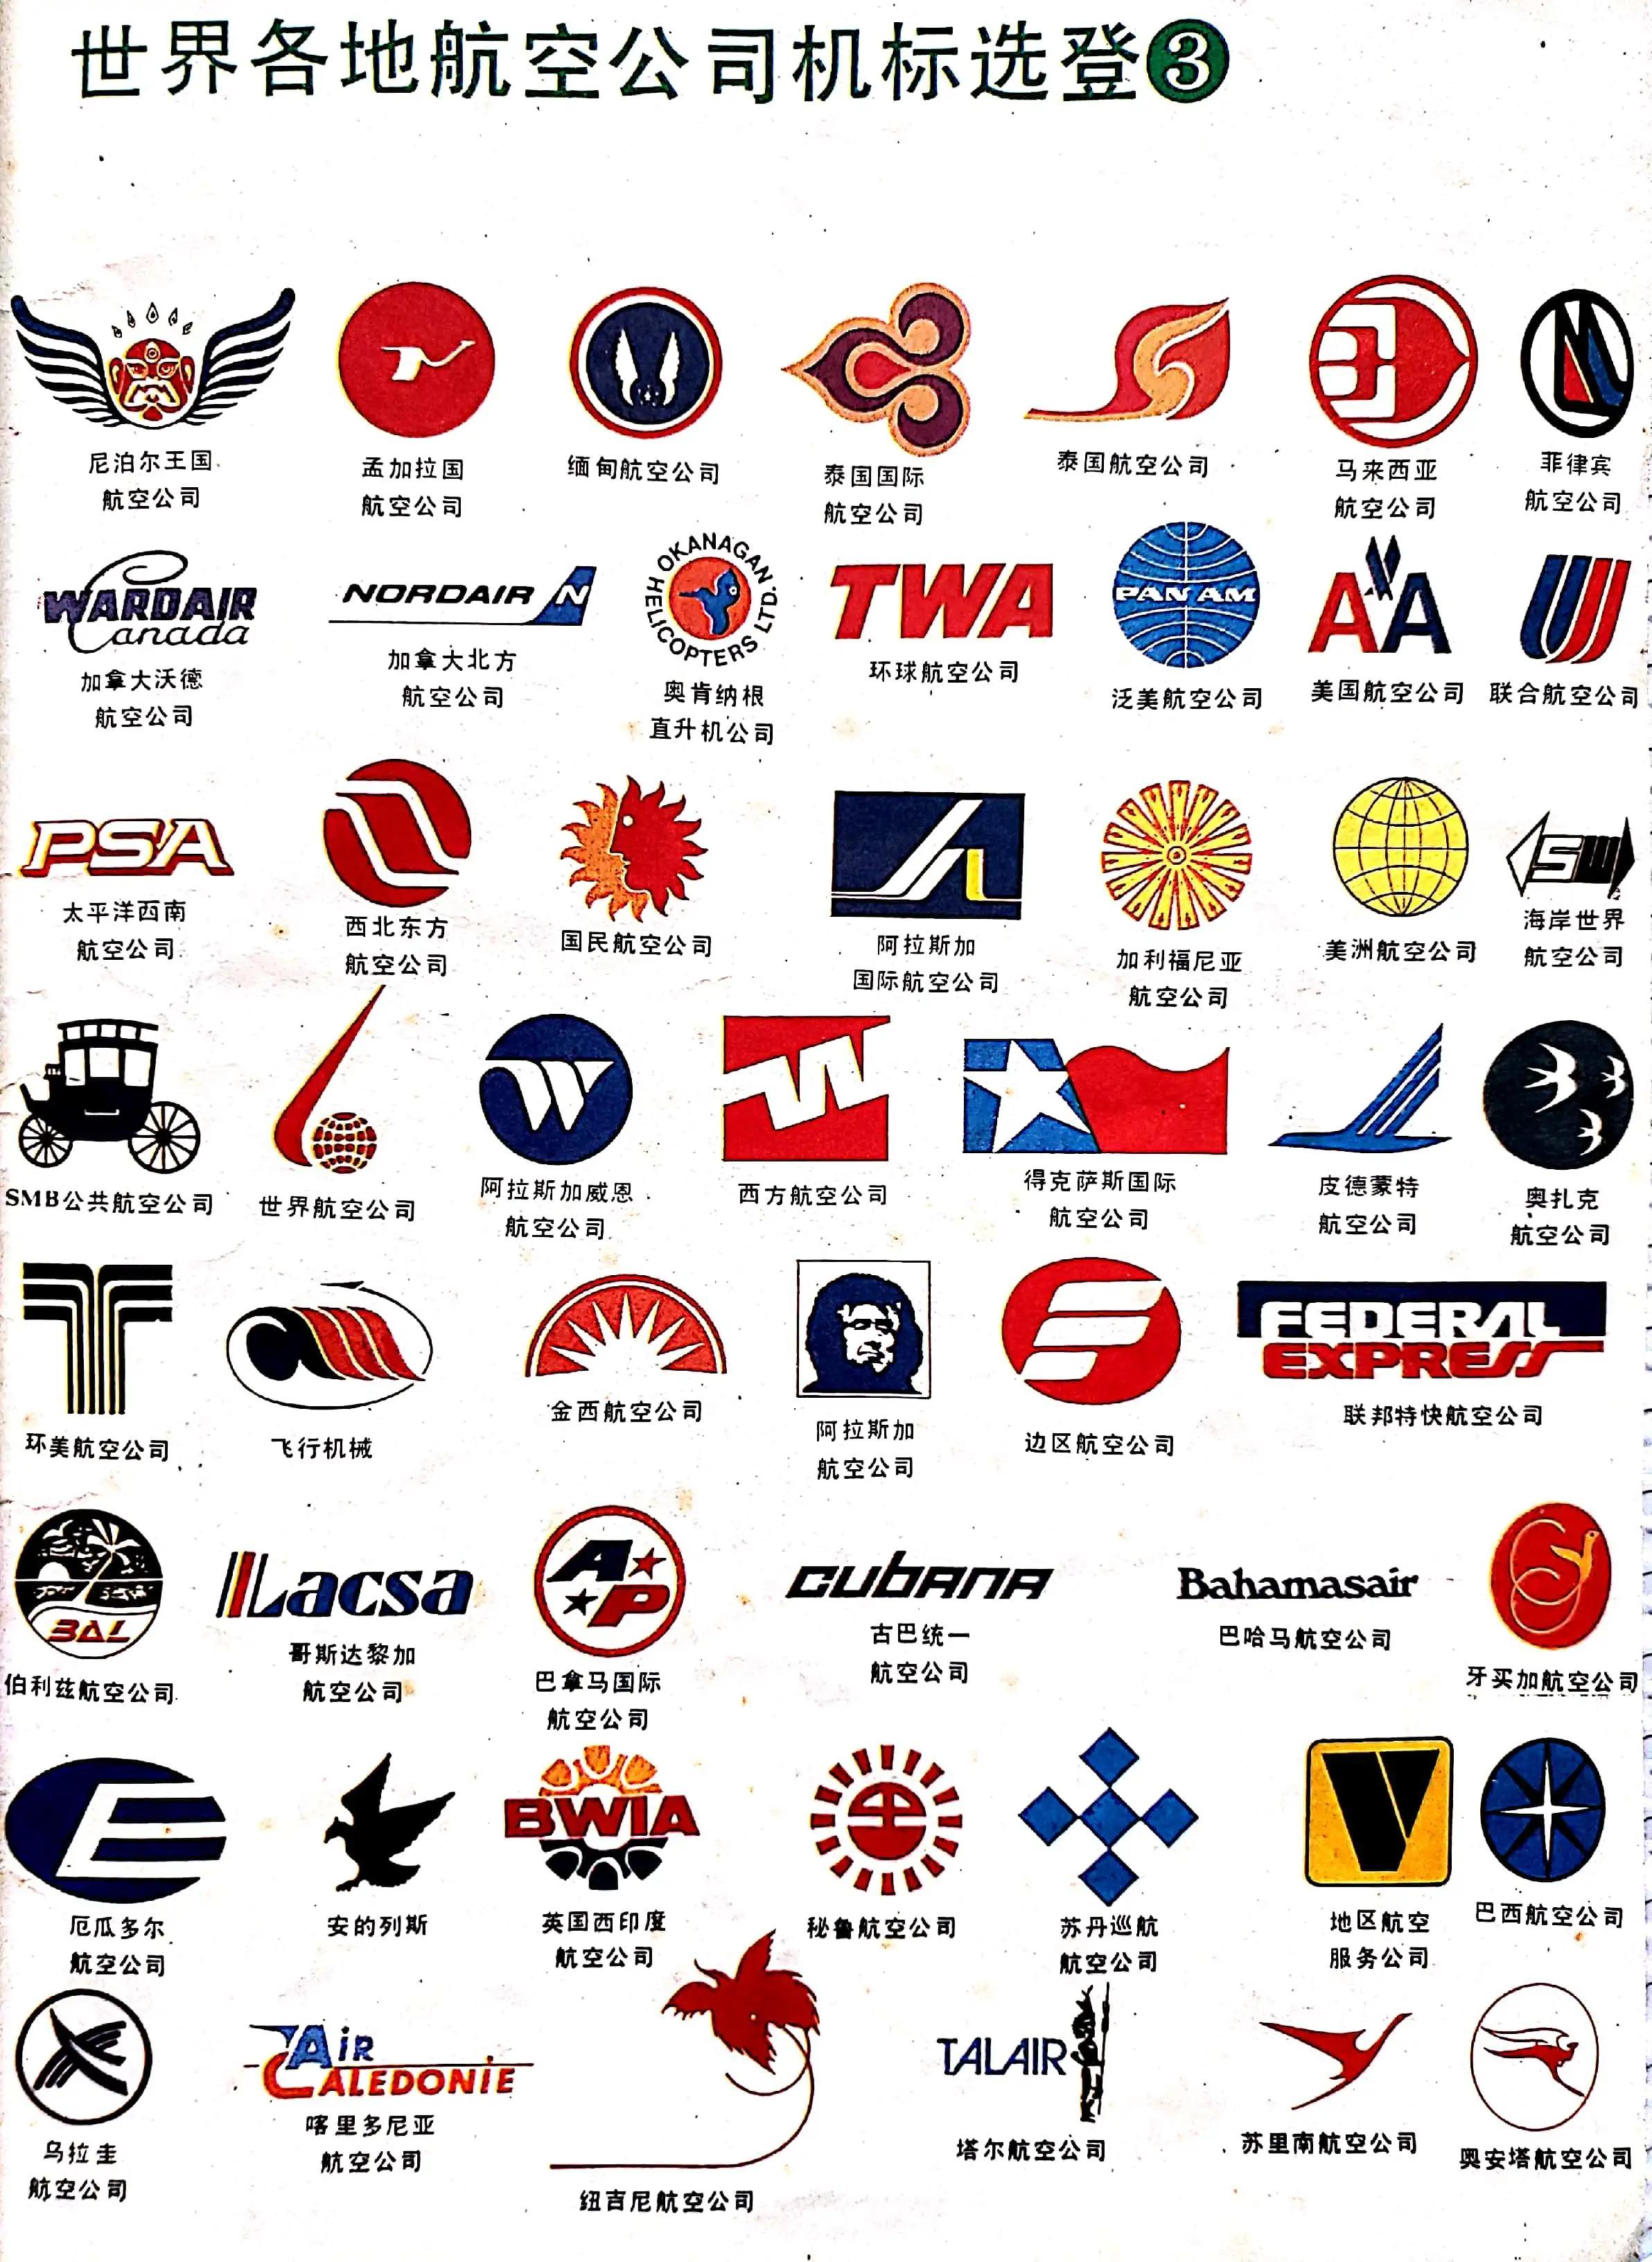 各大航空公司的标志图片